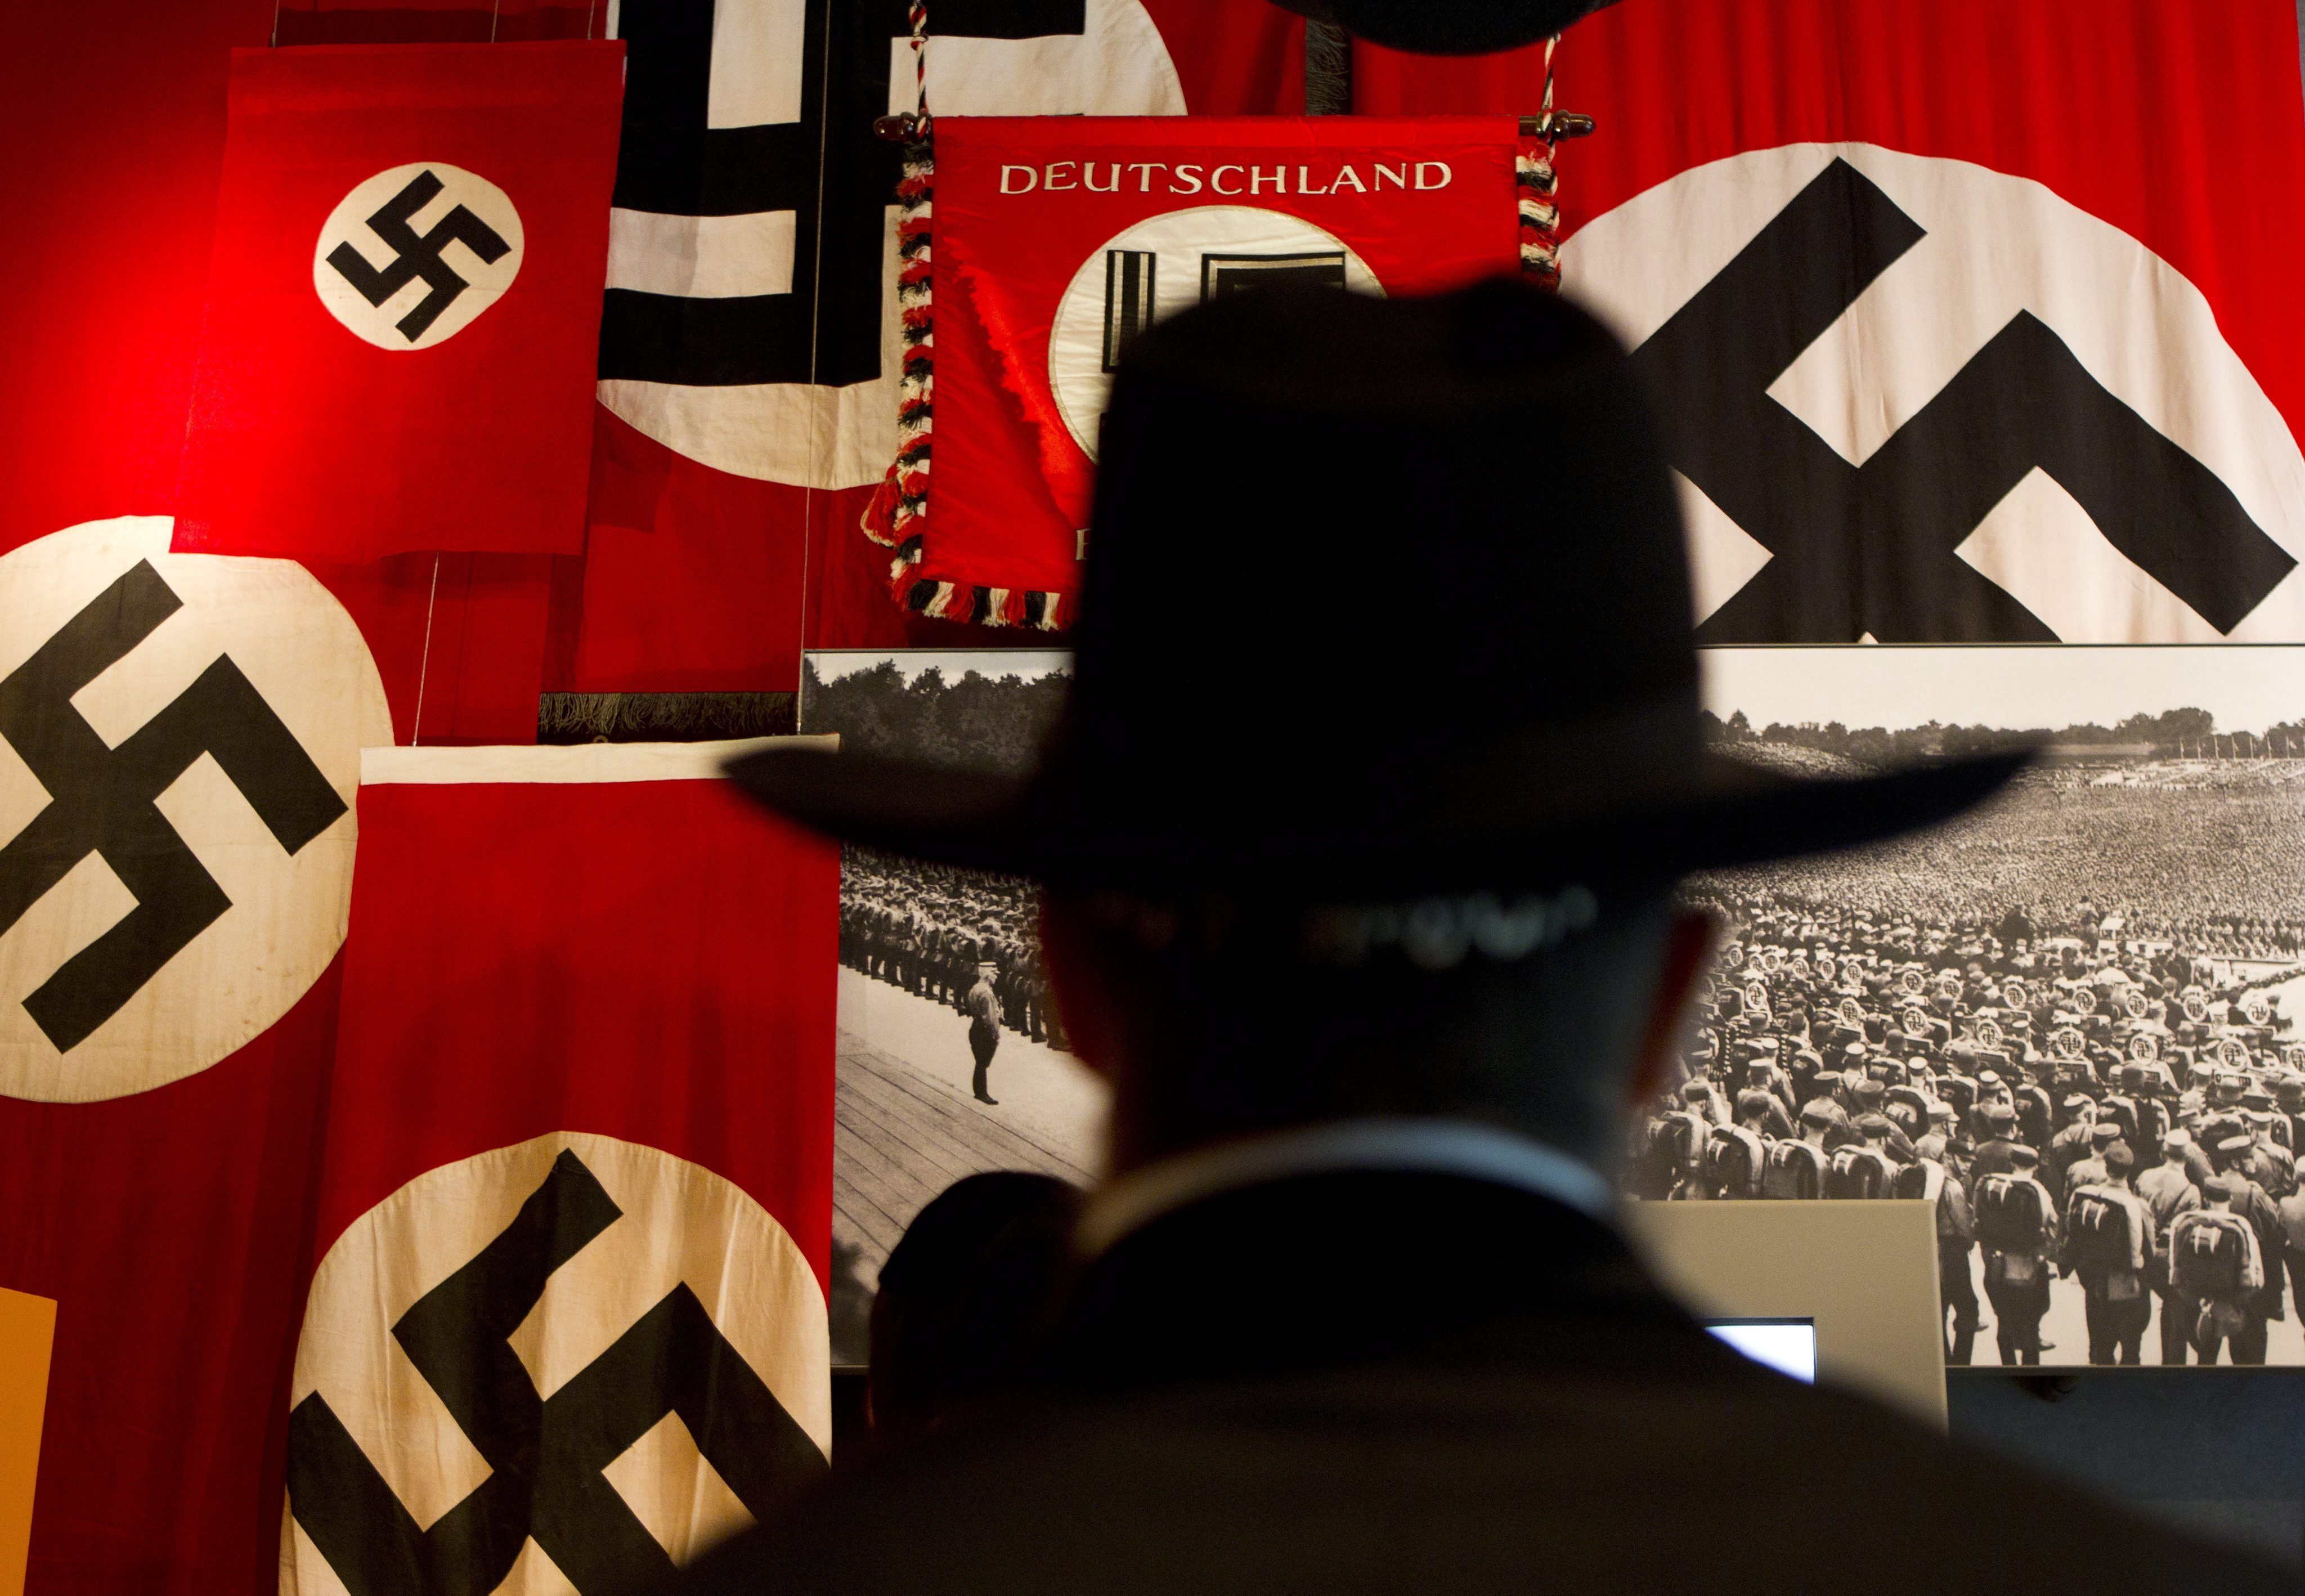 Un judío ultraortodoxo observa fotografías y banderas nazis con la esvástica durante una visita a un museo. EFE/JIM HOLLANDER/Archivo
